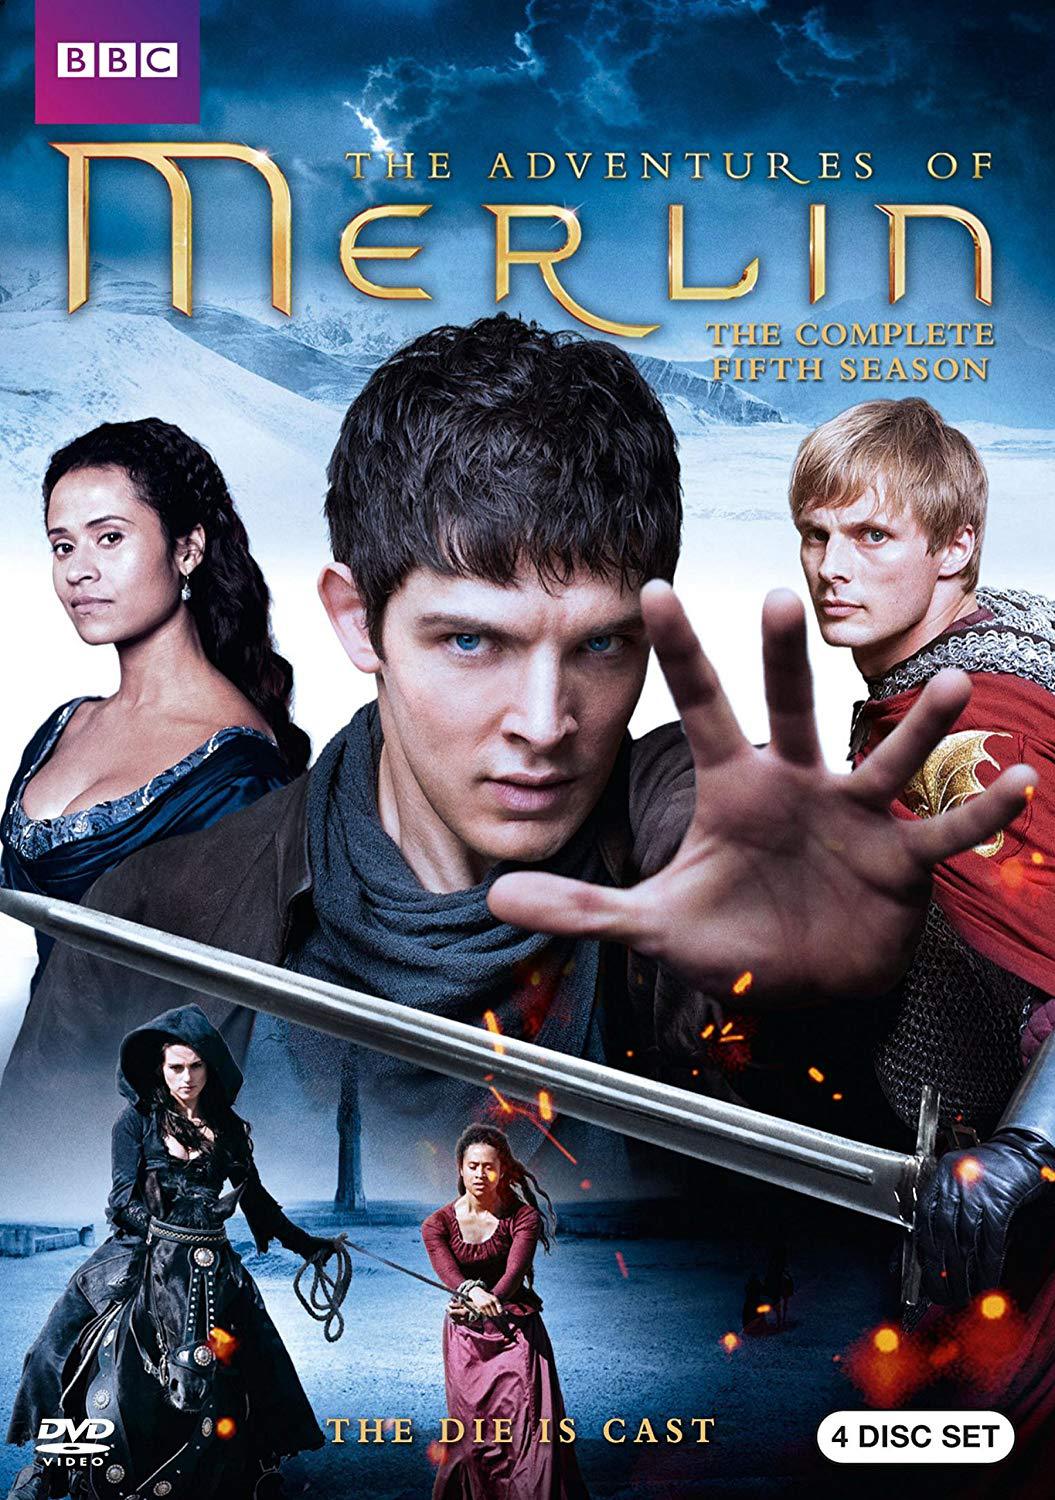 Adventures of Merlin